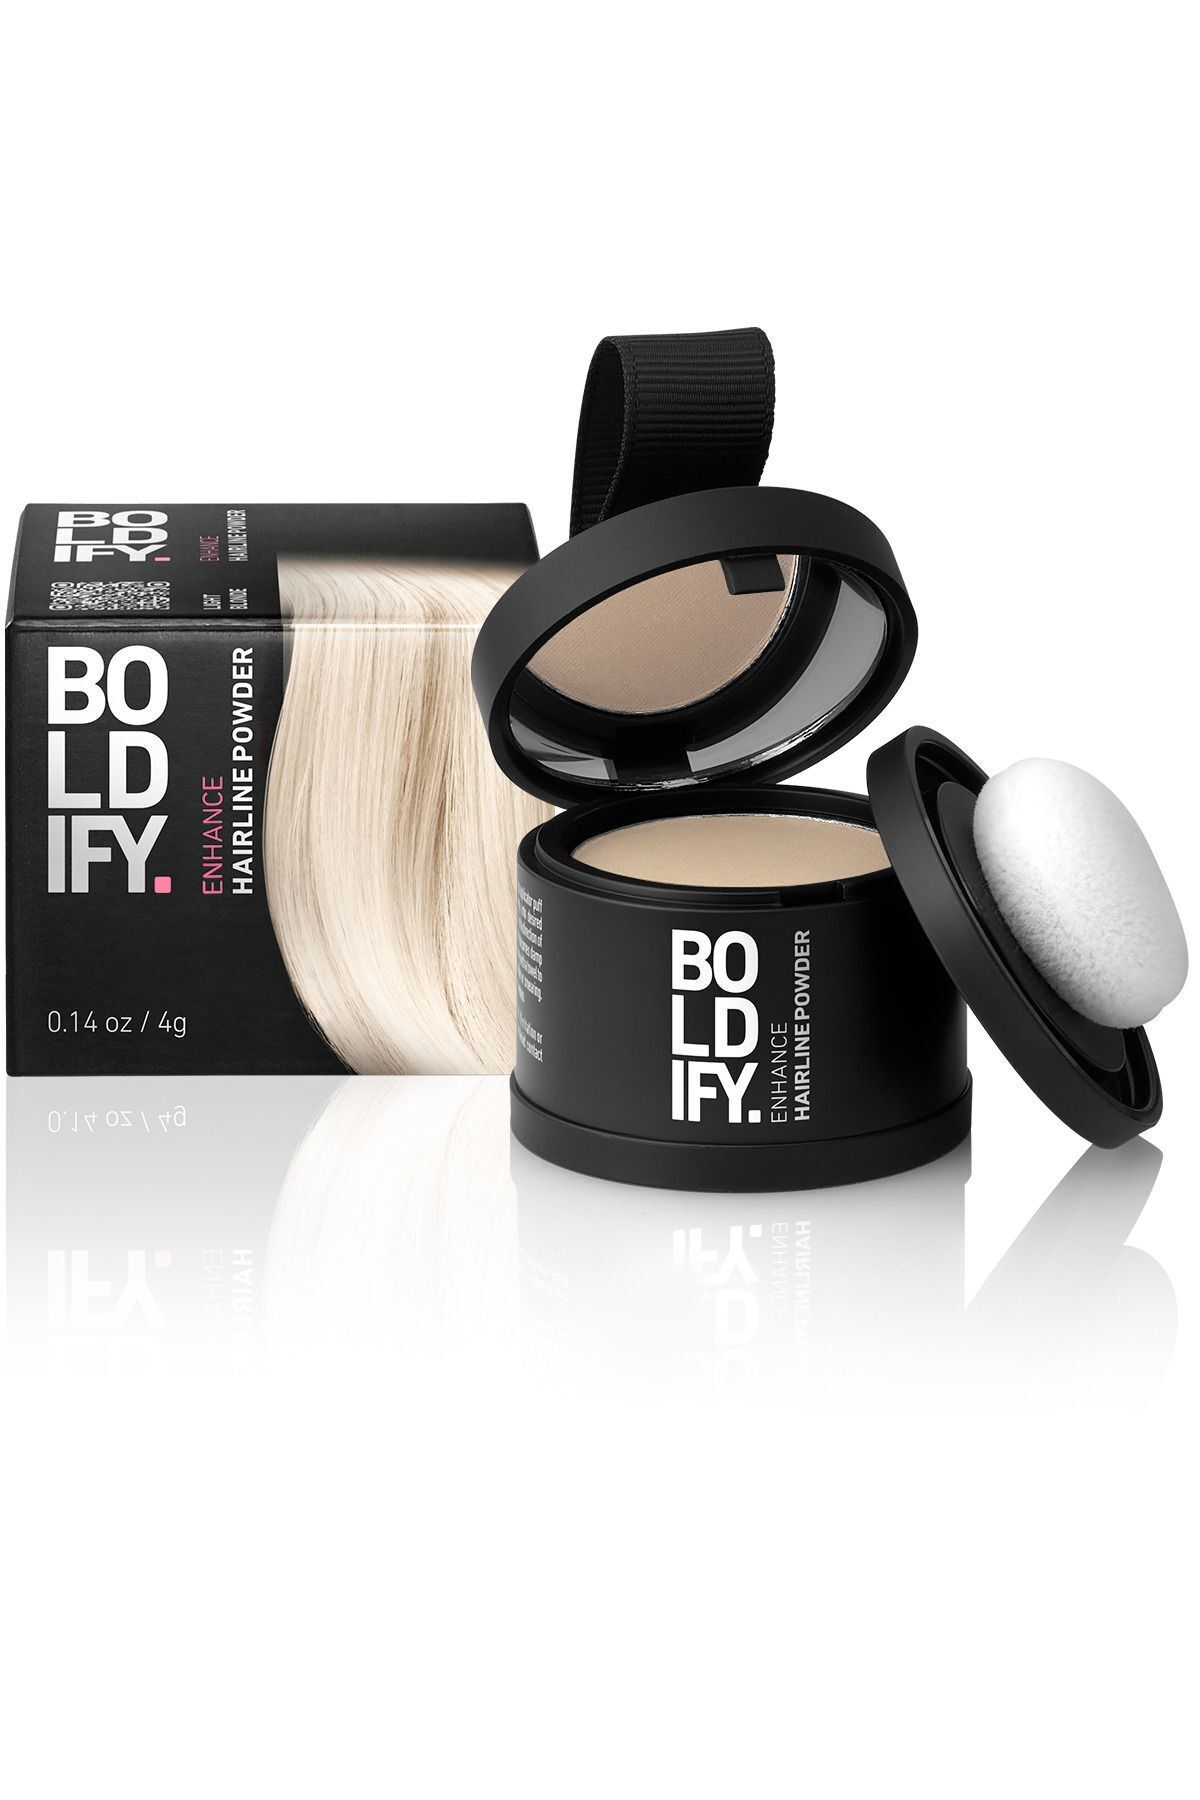 Boldify Saç Tozu ACIK SARI, Dolgunlaştırıcı Topik Tozu, Gizler & 48 saat etkili